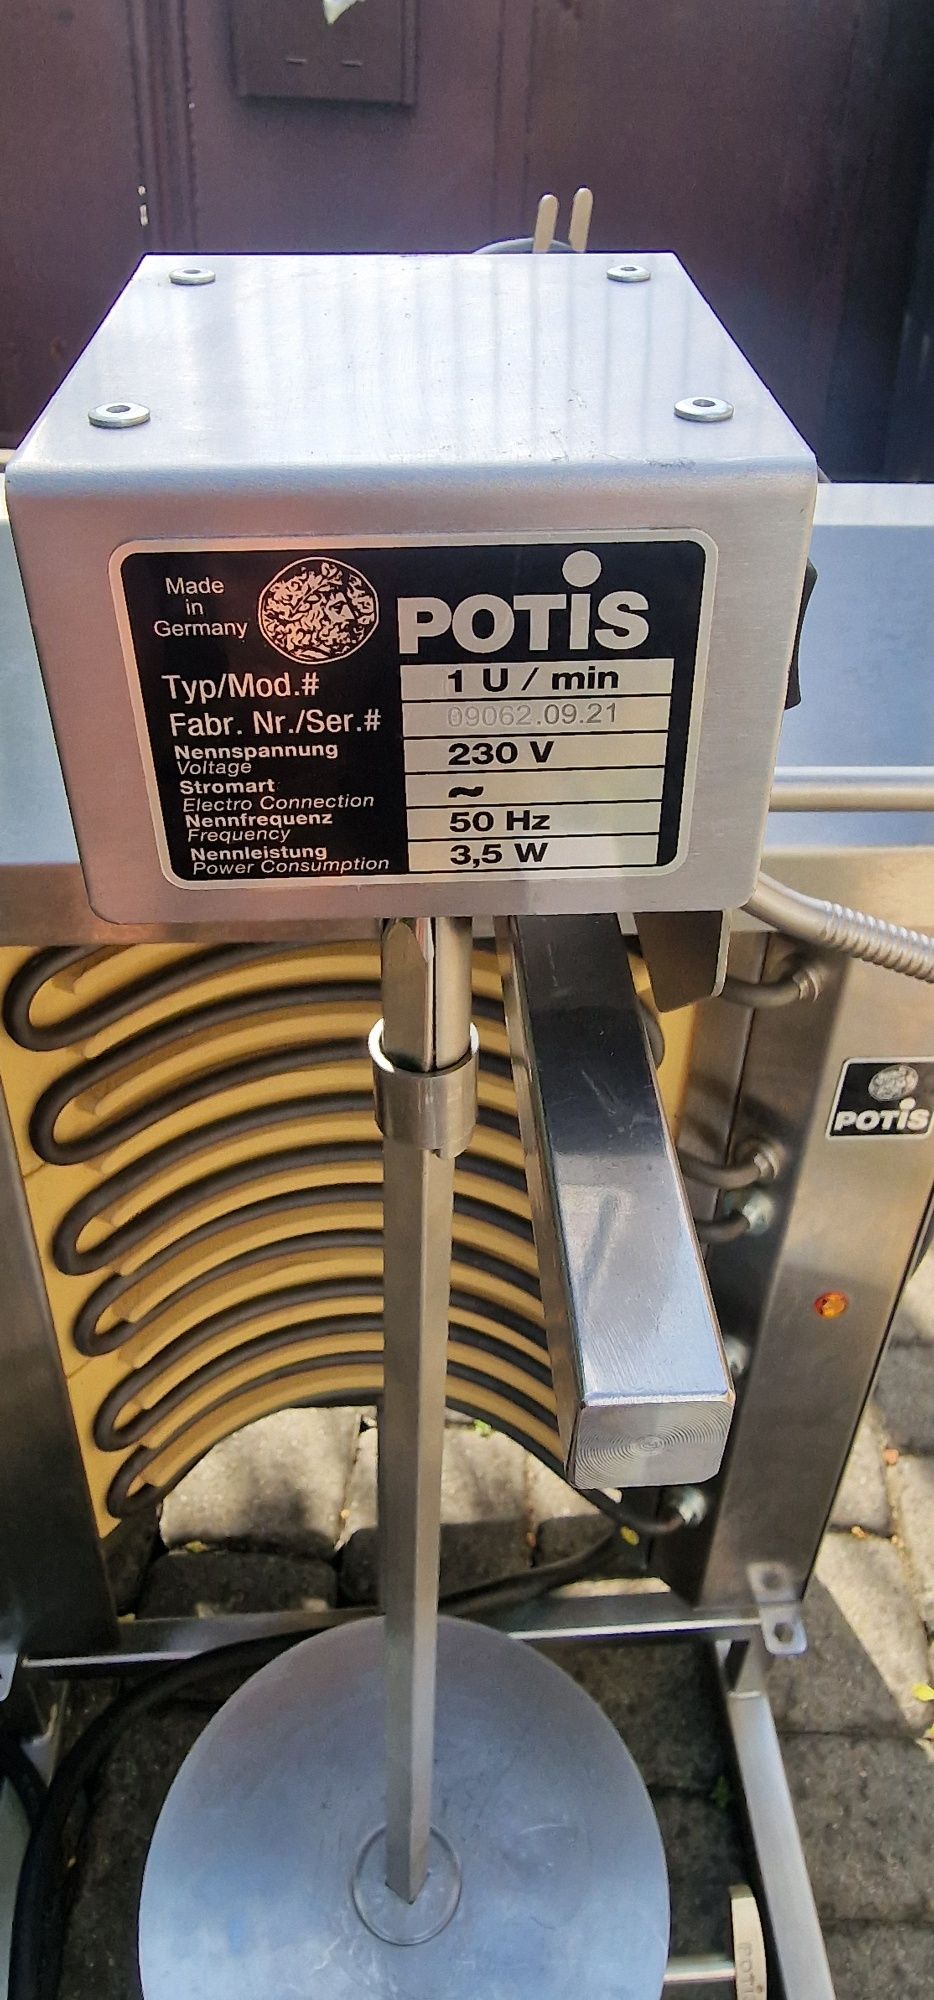 Opiekacz do kebaba Potis E 1 - S, 4,5 kW, elektryczny